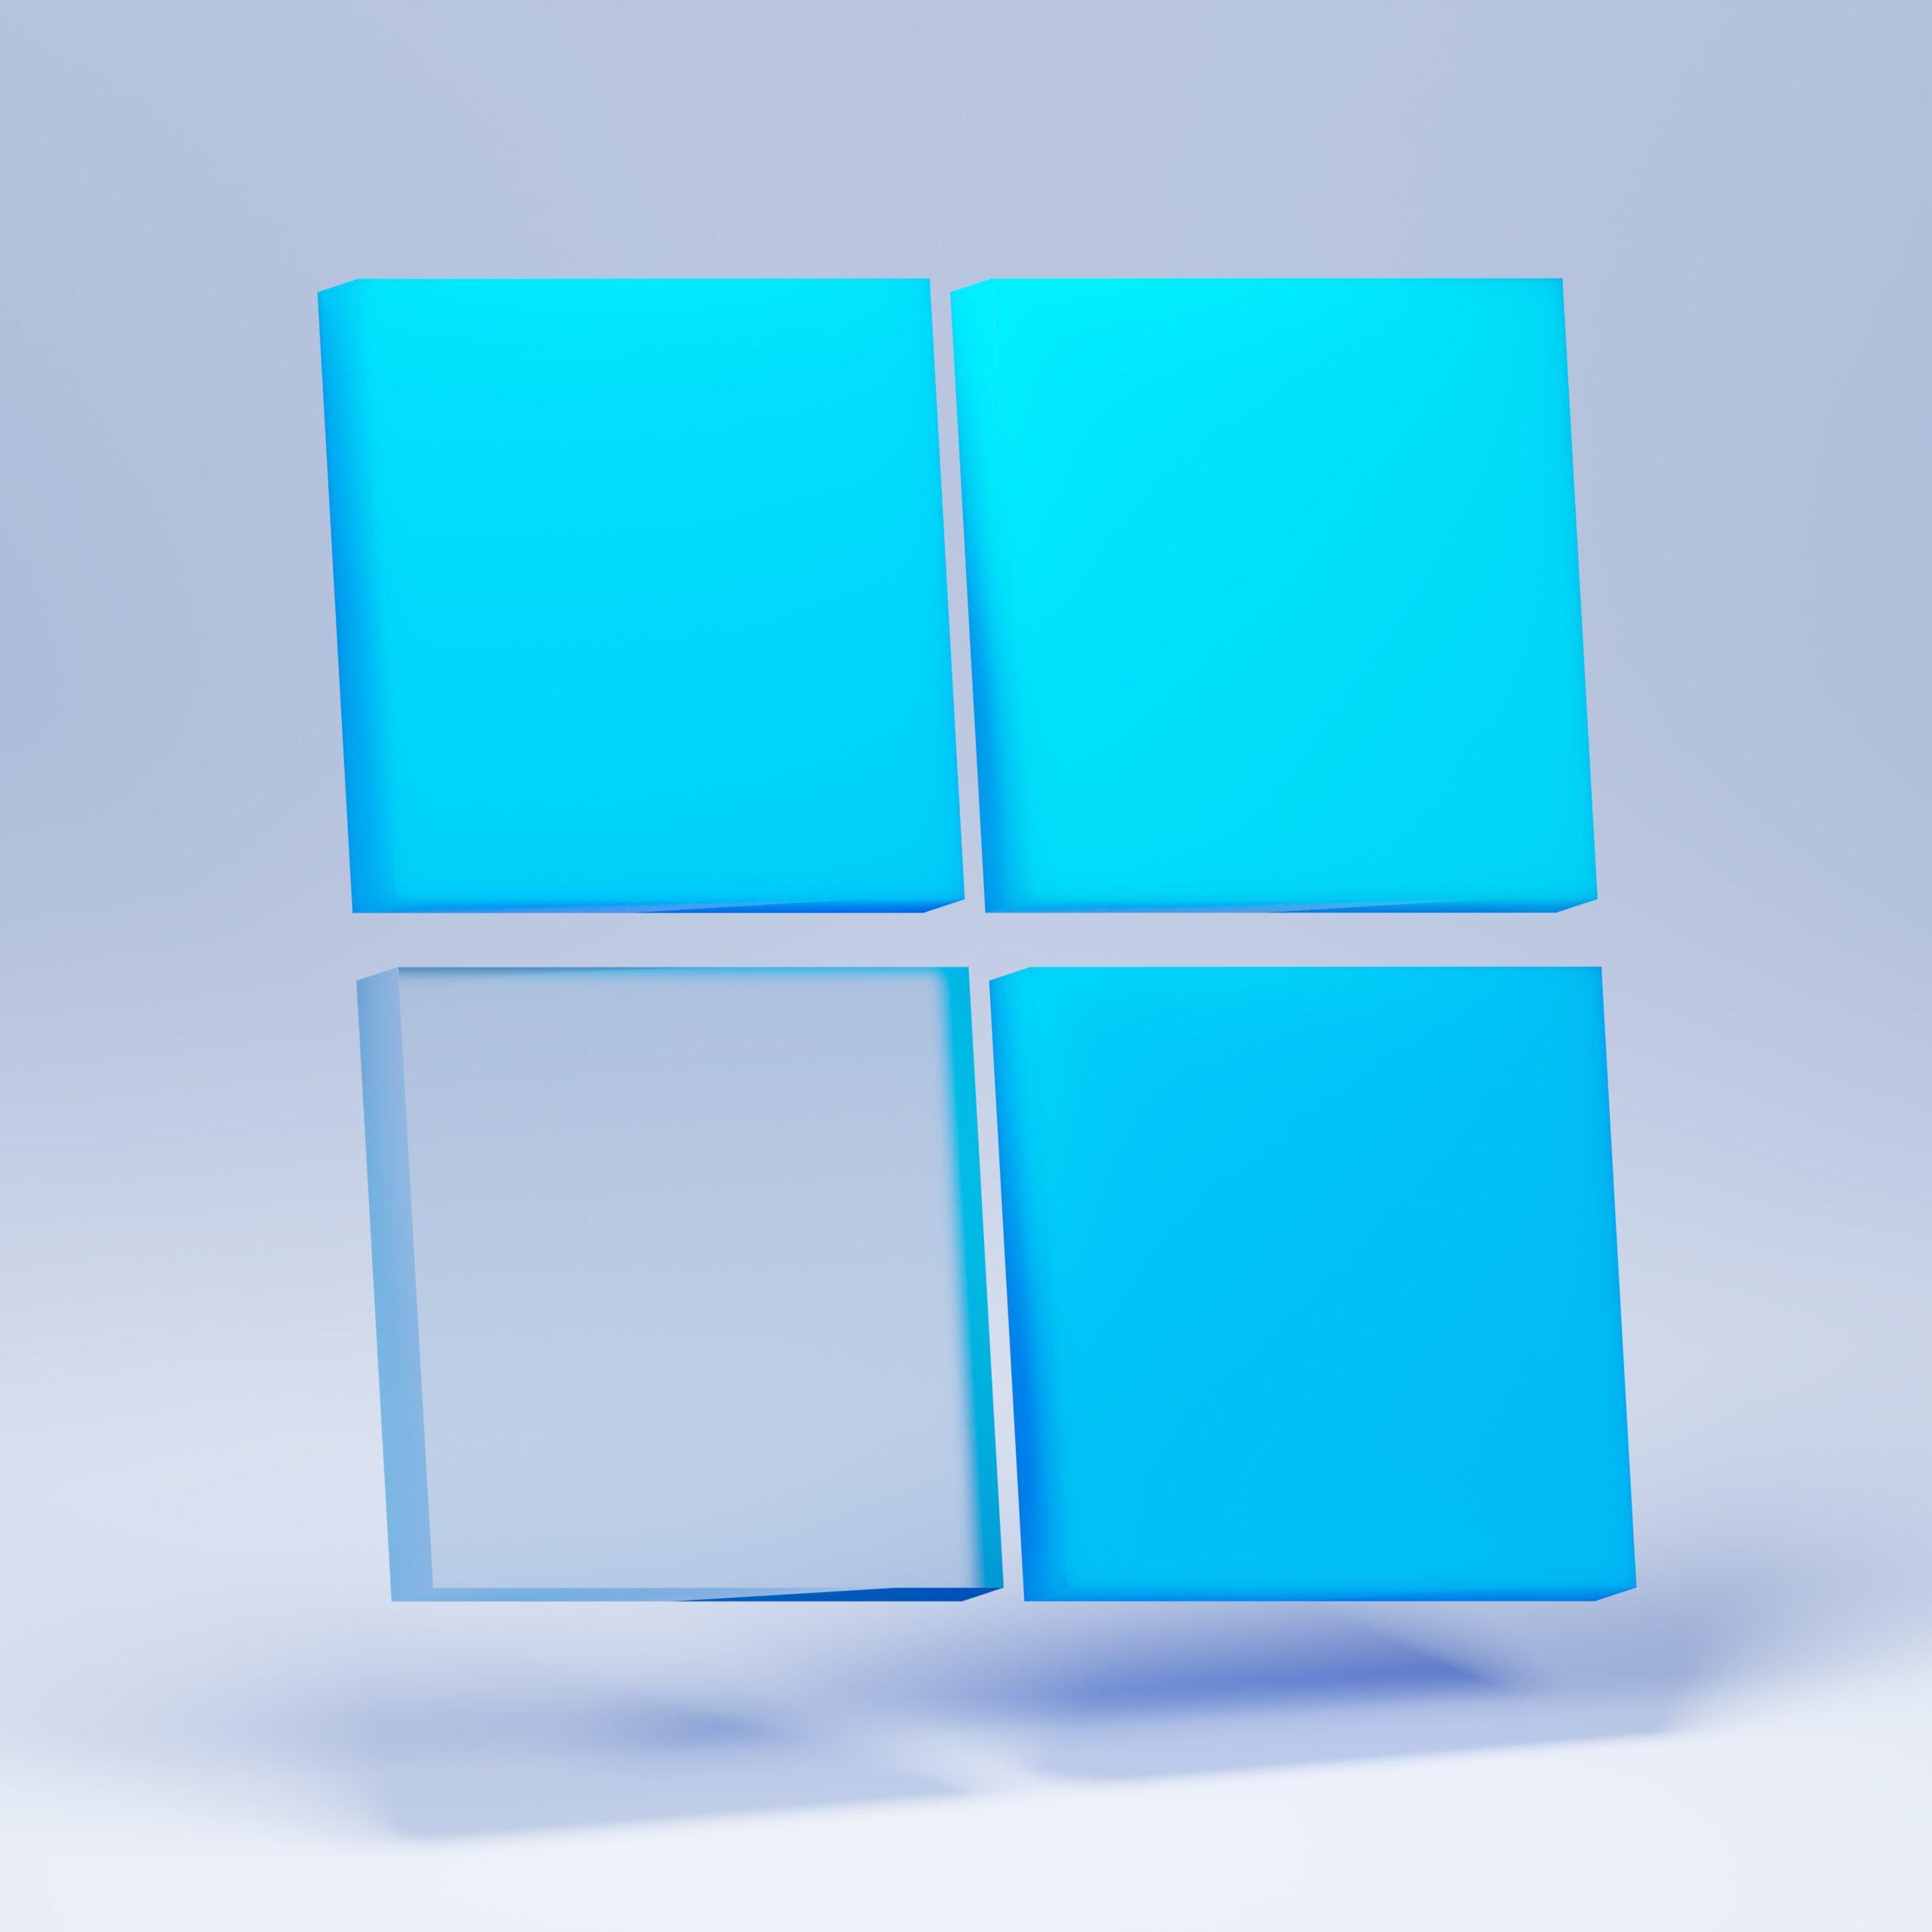 Welcome, Windows 11 !!!